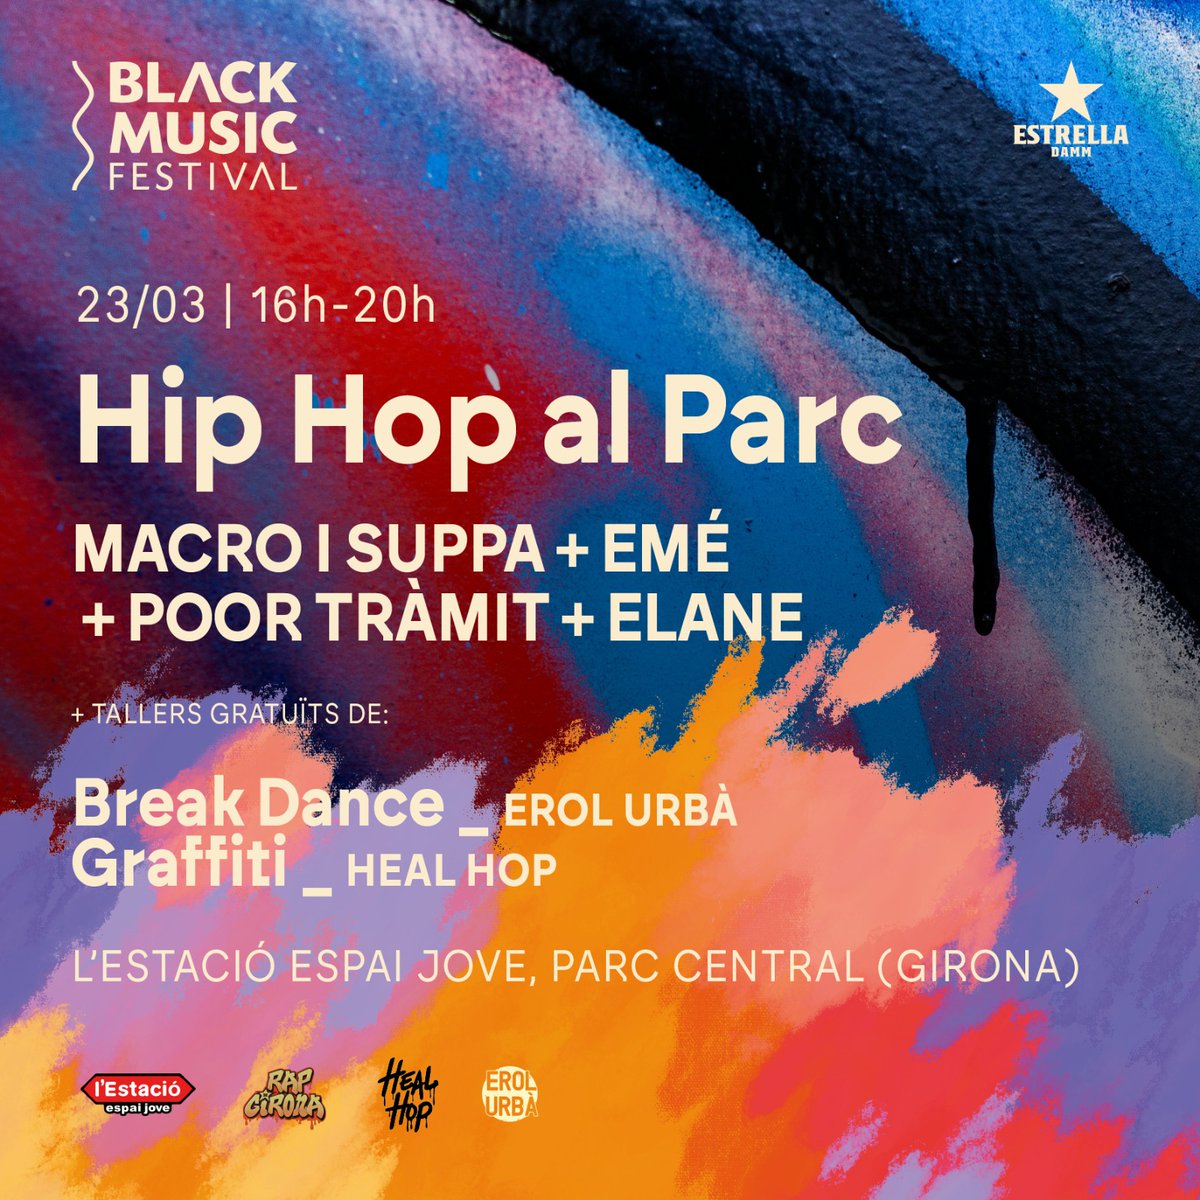 Tothom hi està convidat! El Hip Hop és per tothom, i si no, vine a #estacioespaijove el dia 23 i ho veus. Esperem a famílies senceres amb ganes de passar-ho bé i de gaudir de la millor música urbana de la nostra terra. #blackmusicfestival #hiphopalparc #breakdance #grafitti